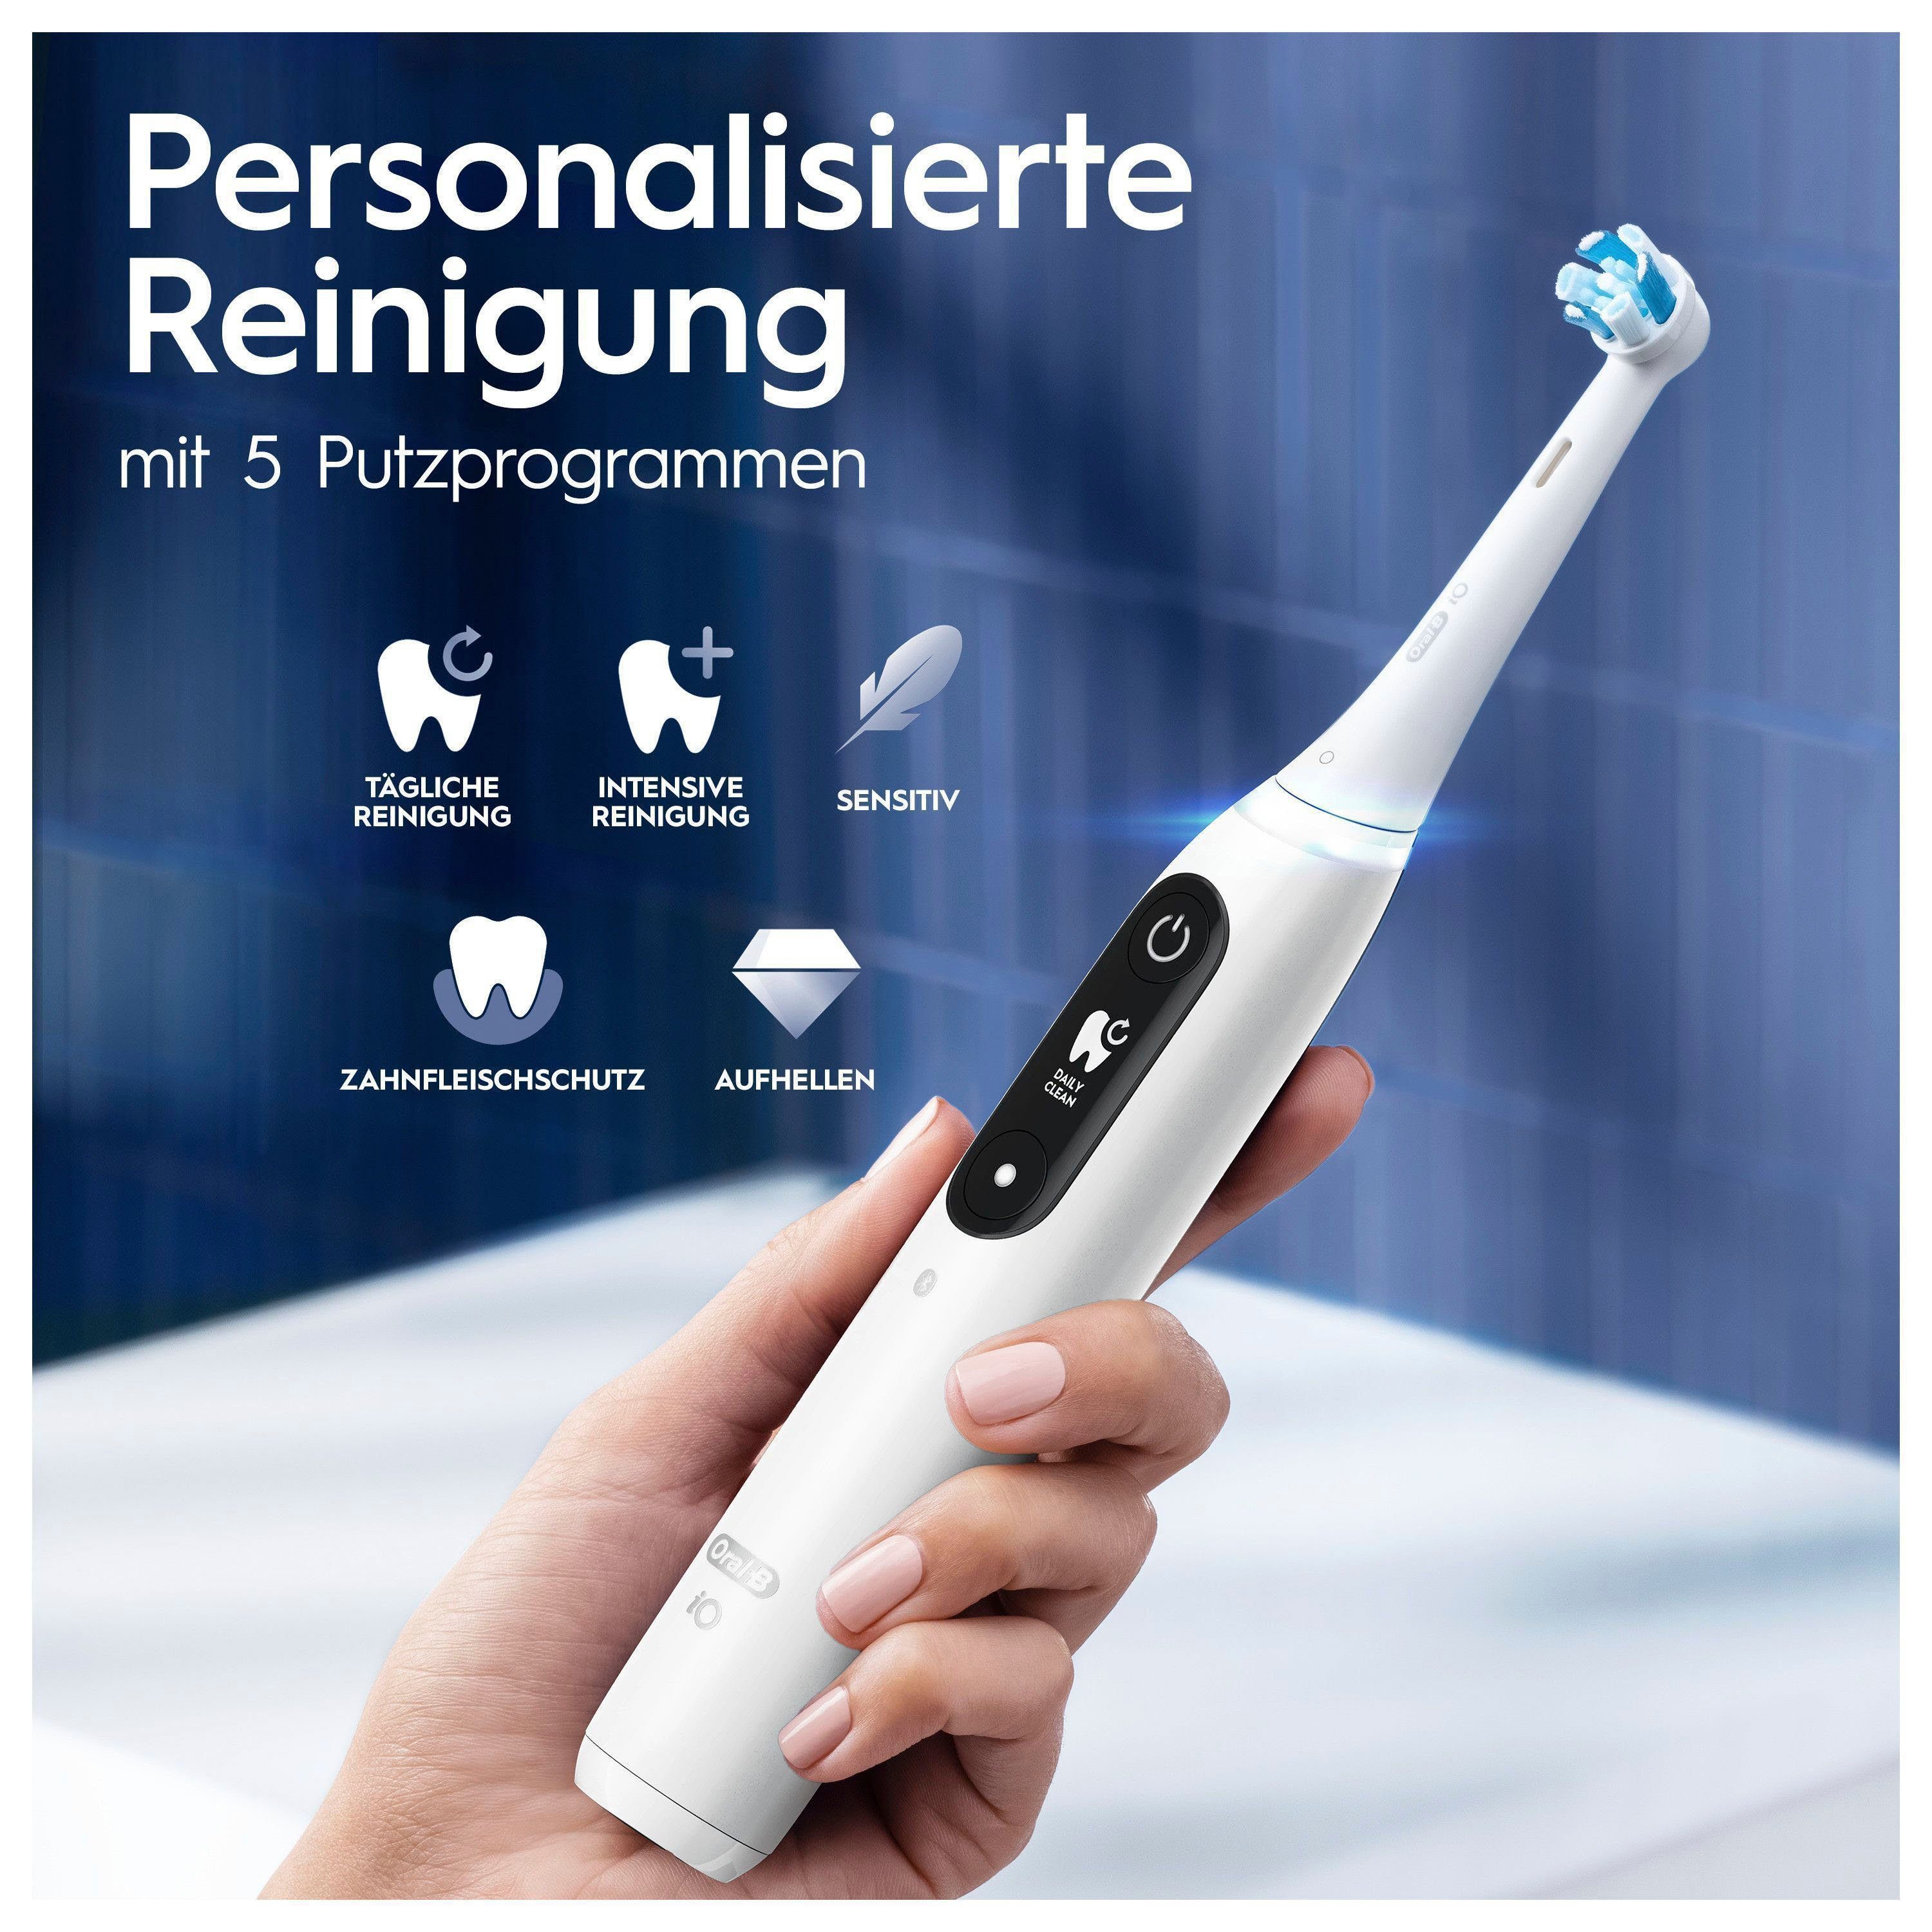 Oral-B Elektrische Zahnbürste iO mit 2 white Display, Magnet-Technologie, 5 alabaster Reiseetui Aufsteckbürsten: Putzmodi, 7, St